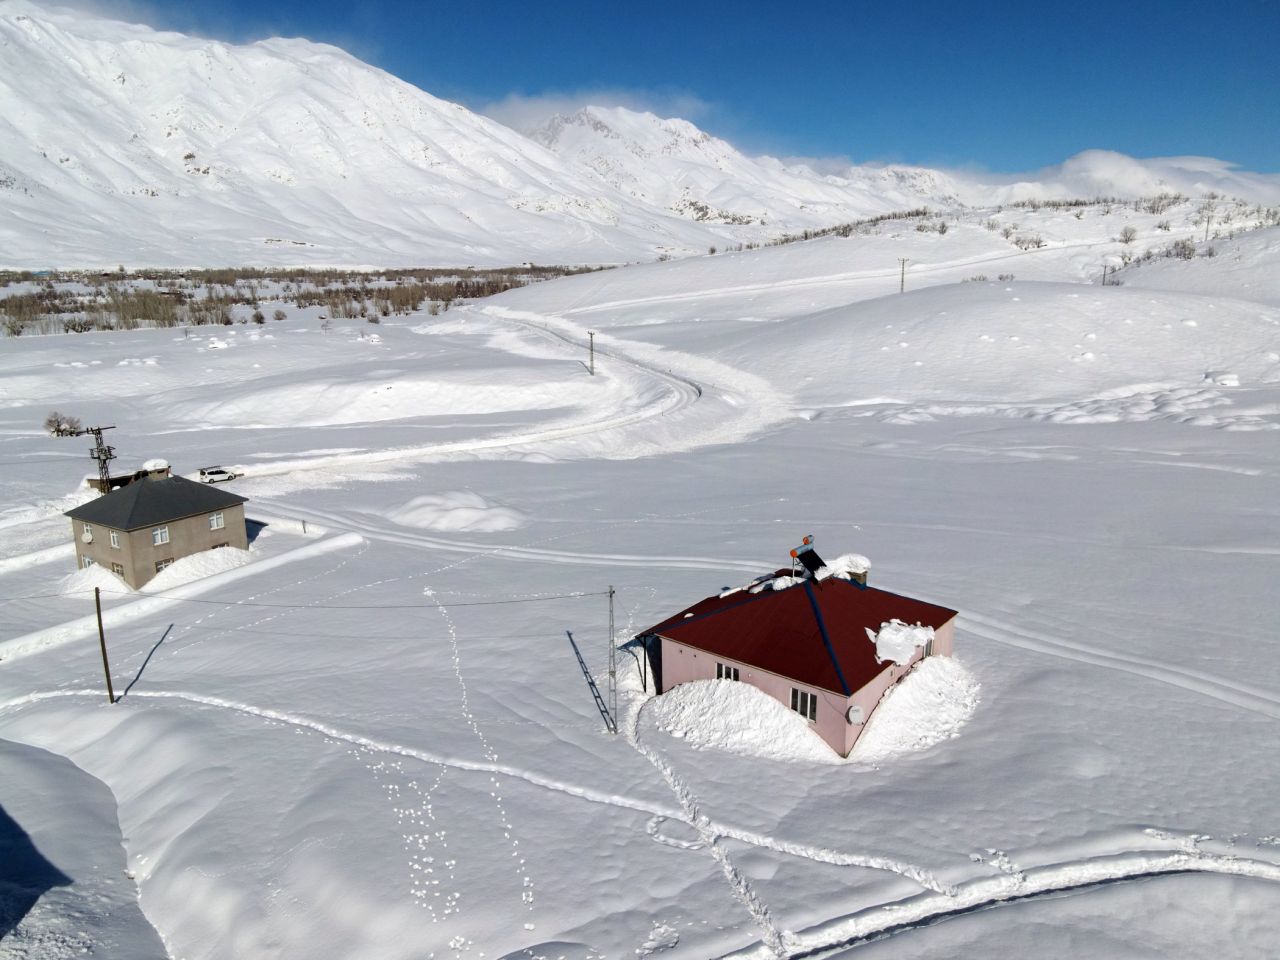 Tunceli'nin Ovacık ilçesi kara gömüldü. 1 haftadır yağan kar yağışı bazı köylerde 3 metreyi geçti. İşte Ovacık'tan kar görüntüleri - Sayfa:1